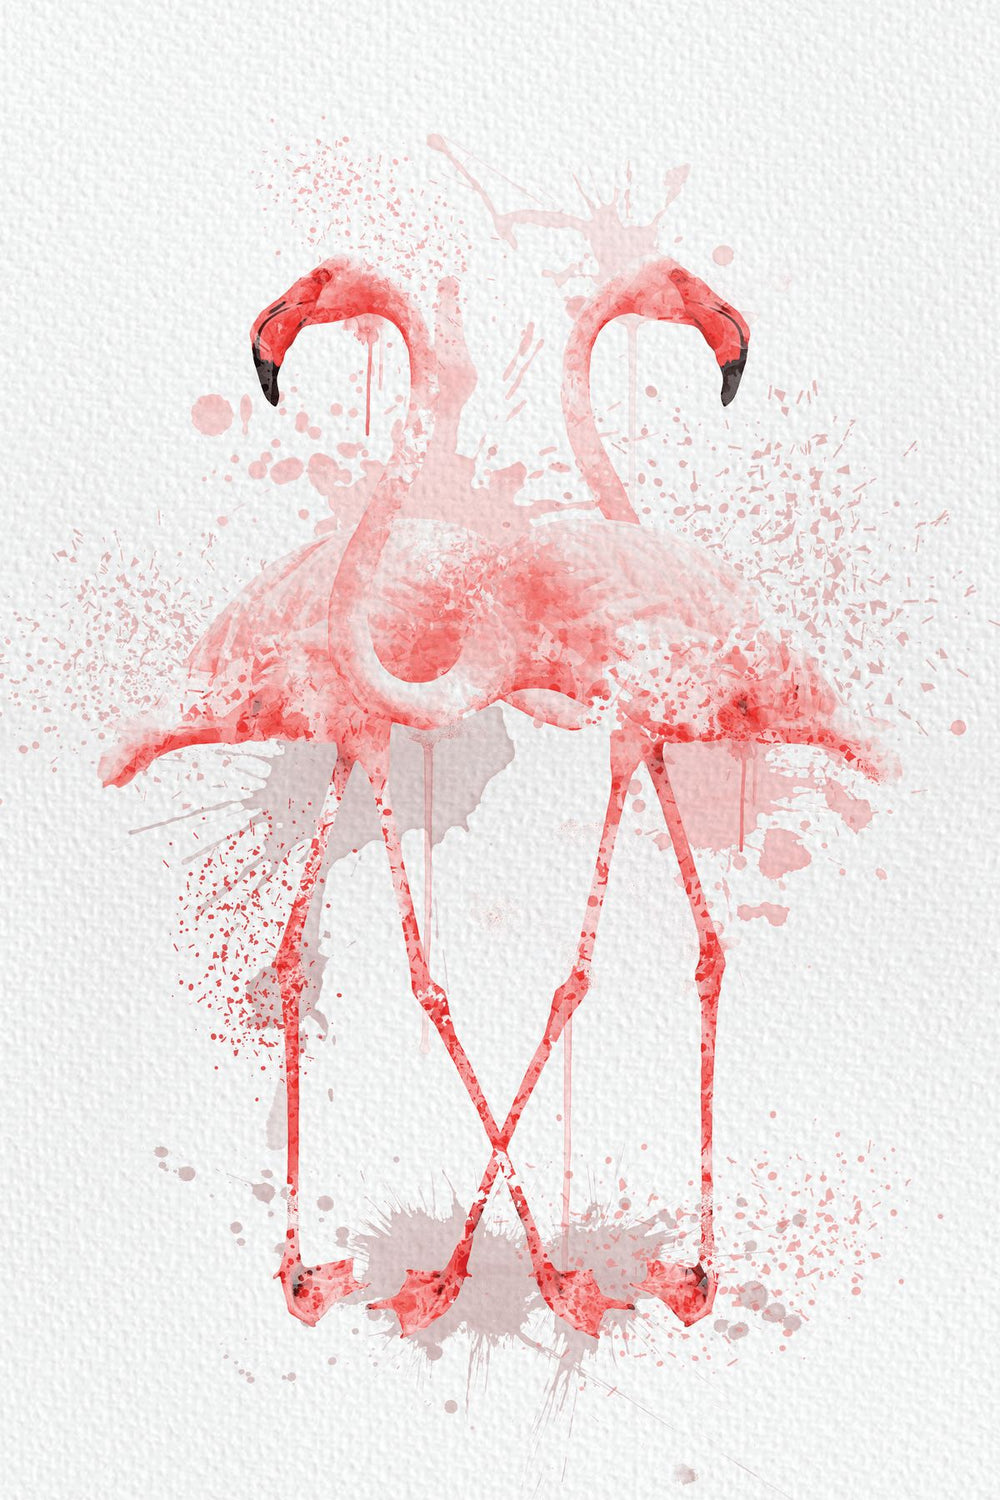 Flamingo Pair Watercolor Splash